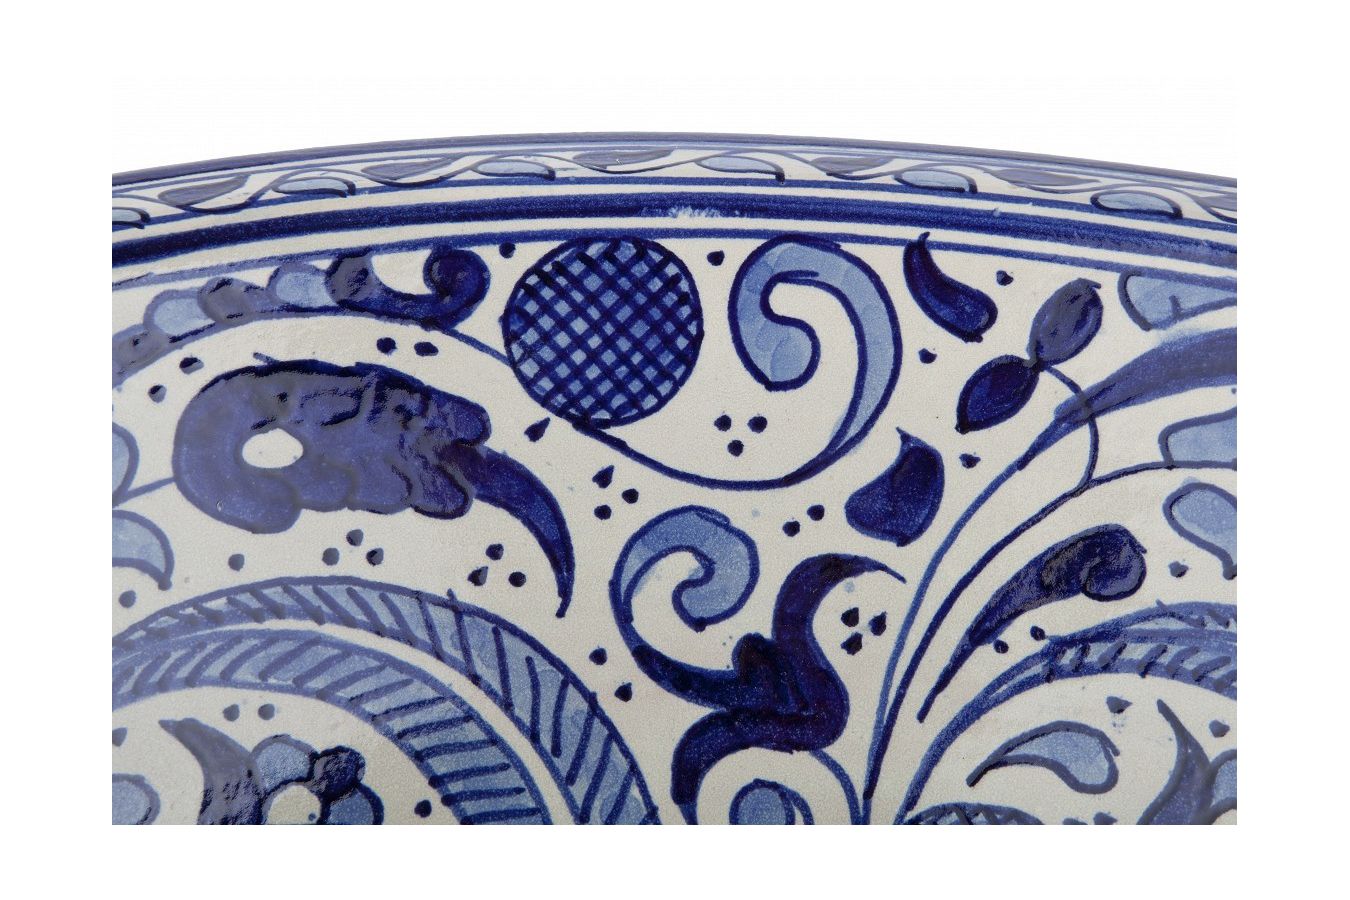 Moroccan sink | moroccan ceramic sink | bathroom sink | moroccan bathroom basin | cloakroom basin | Bleu sink bowl #101 